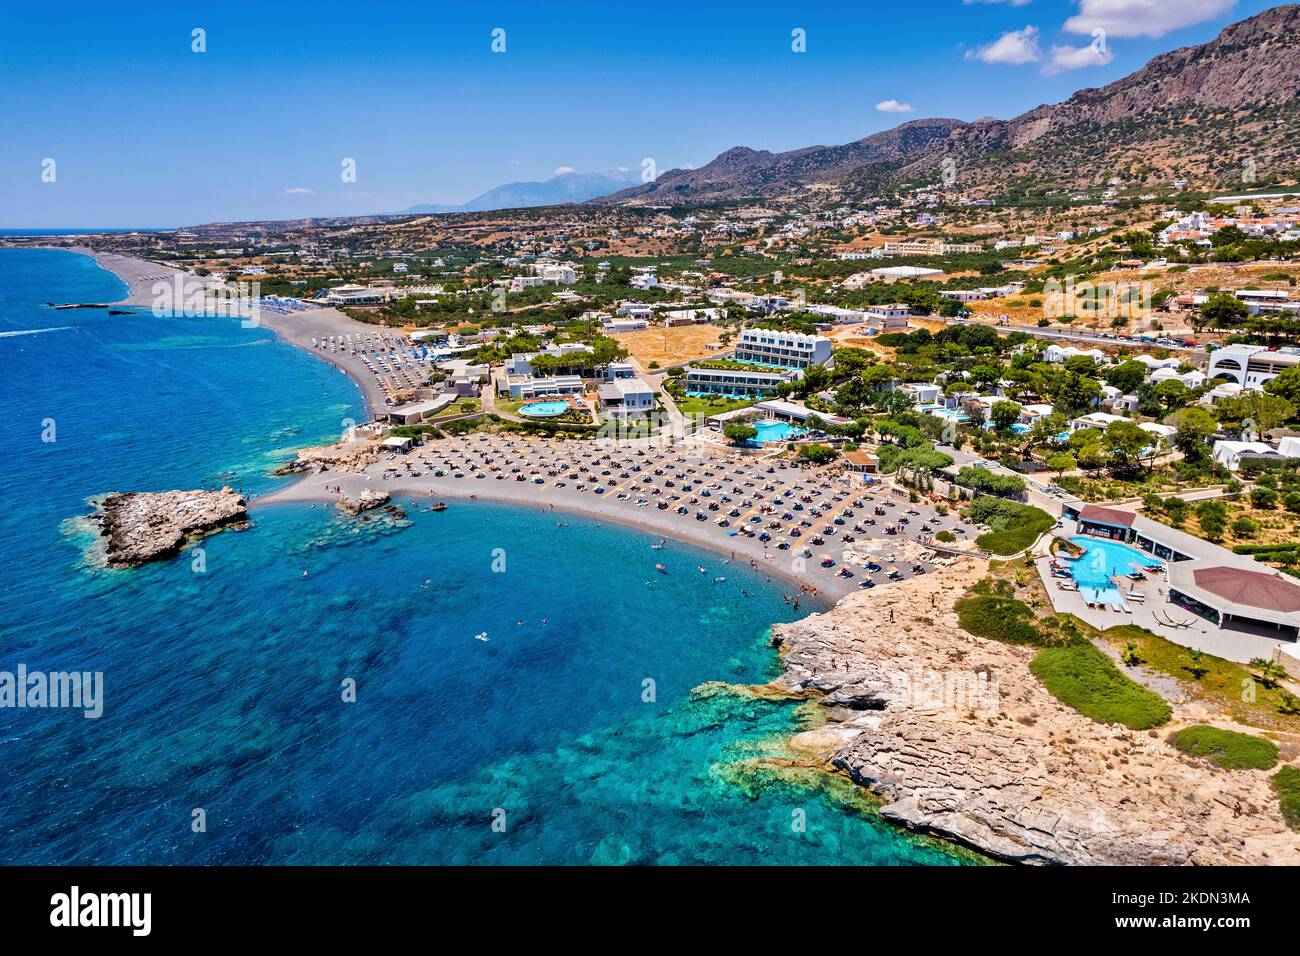 Luftaufnahme (Drohne) vom Kakkos Bay Beach (blaue Flagge verliehen), zwischen Ferma und Koutsounari Dörfern, Ierapetral, Lassithi, Kreta, Griechenland. Stockfoto